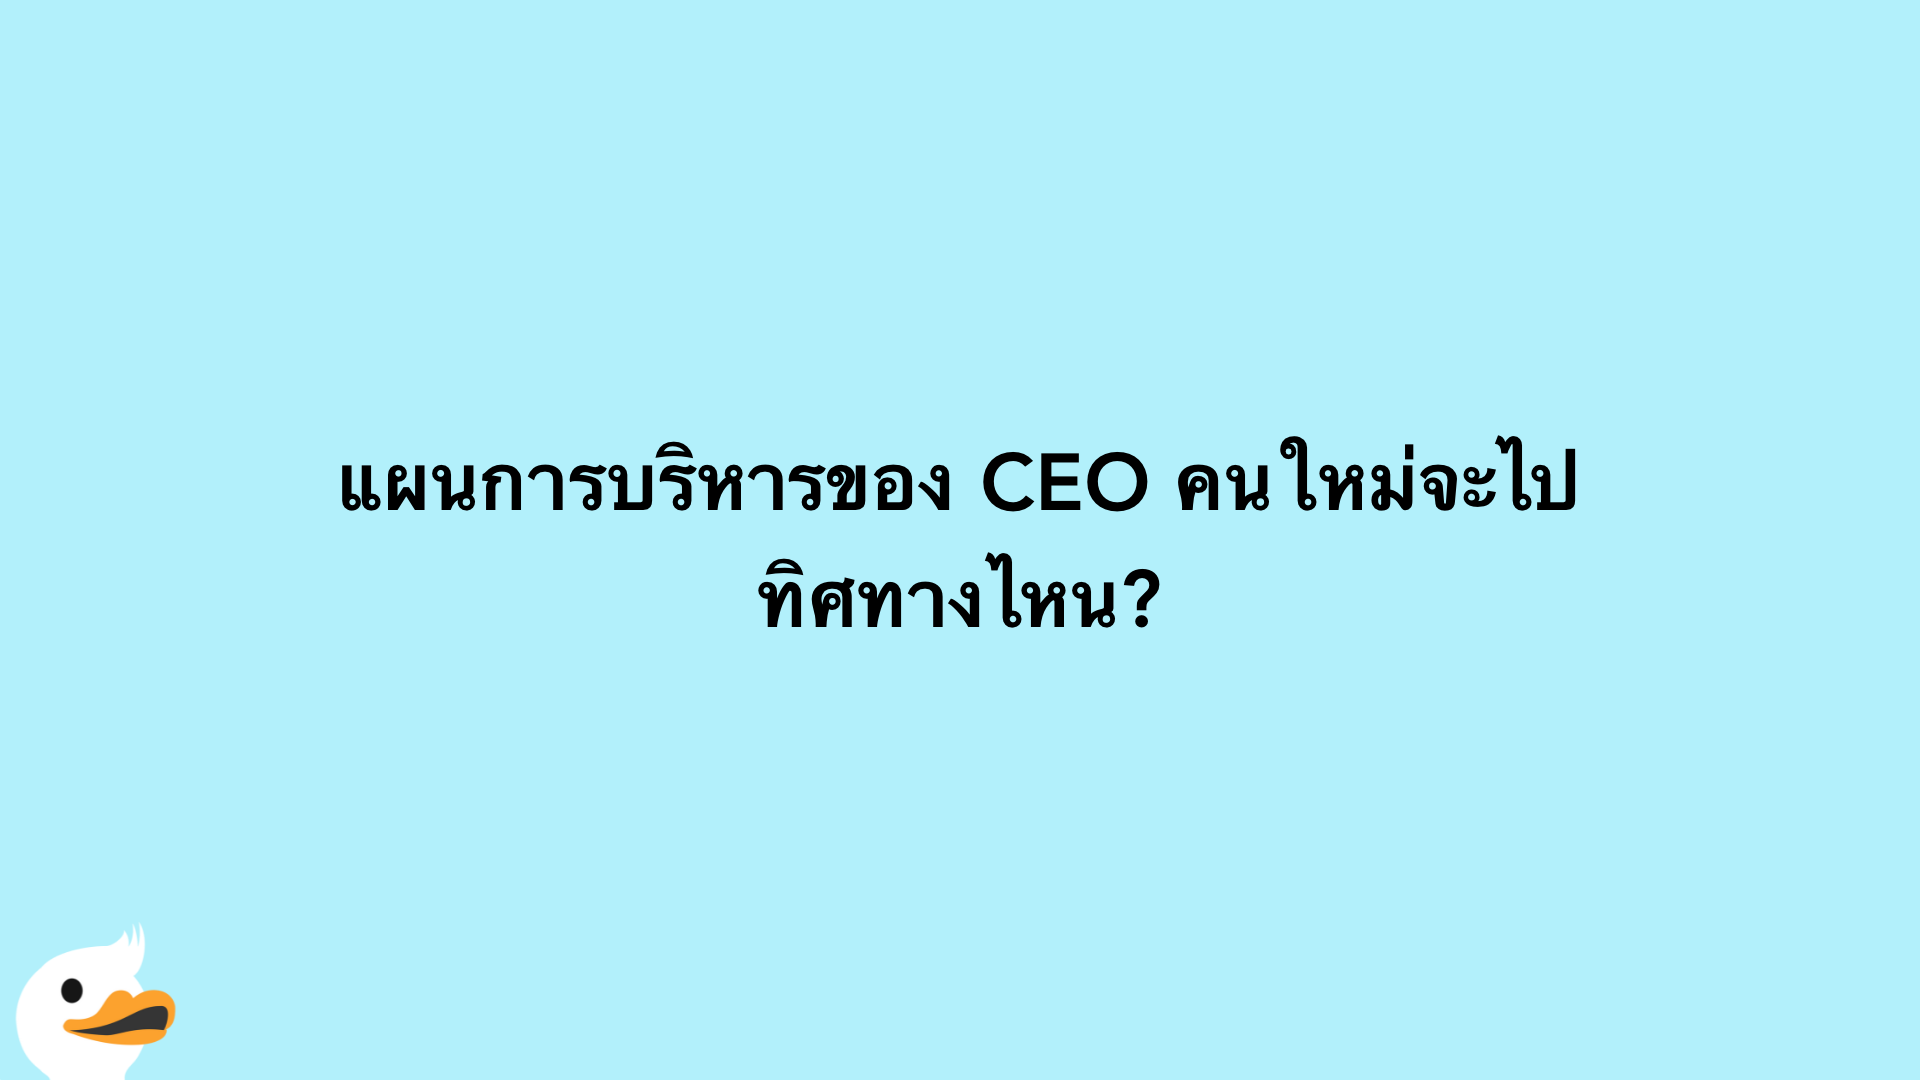 แผนการบริหารของ CEO คนใหม่จะไปทิศทางไหน?